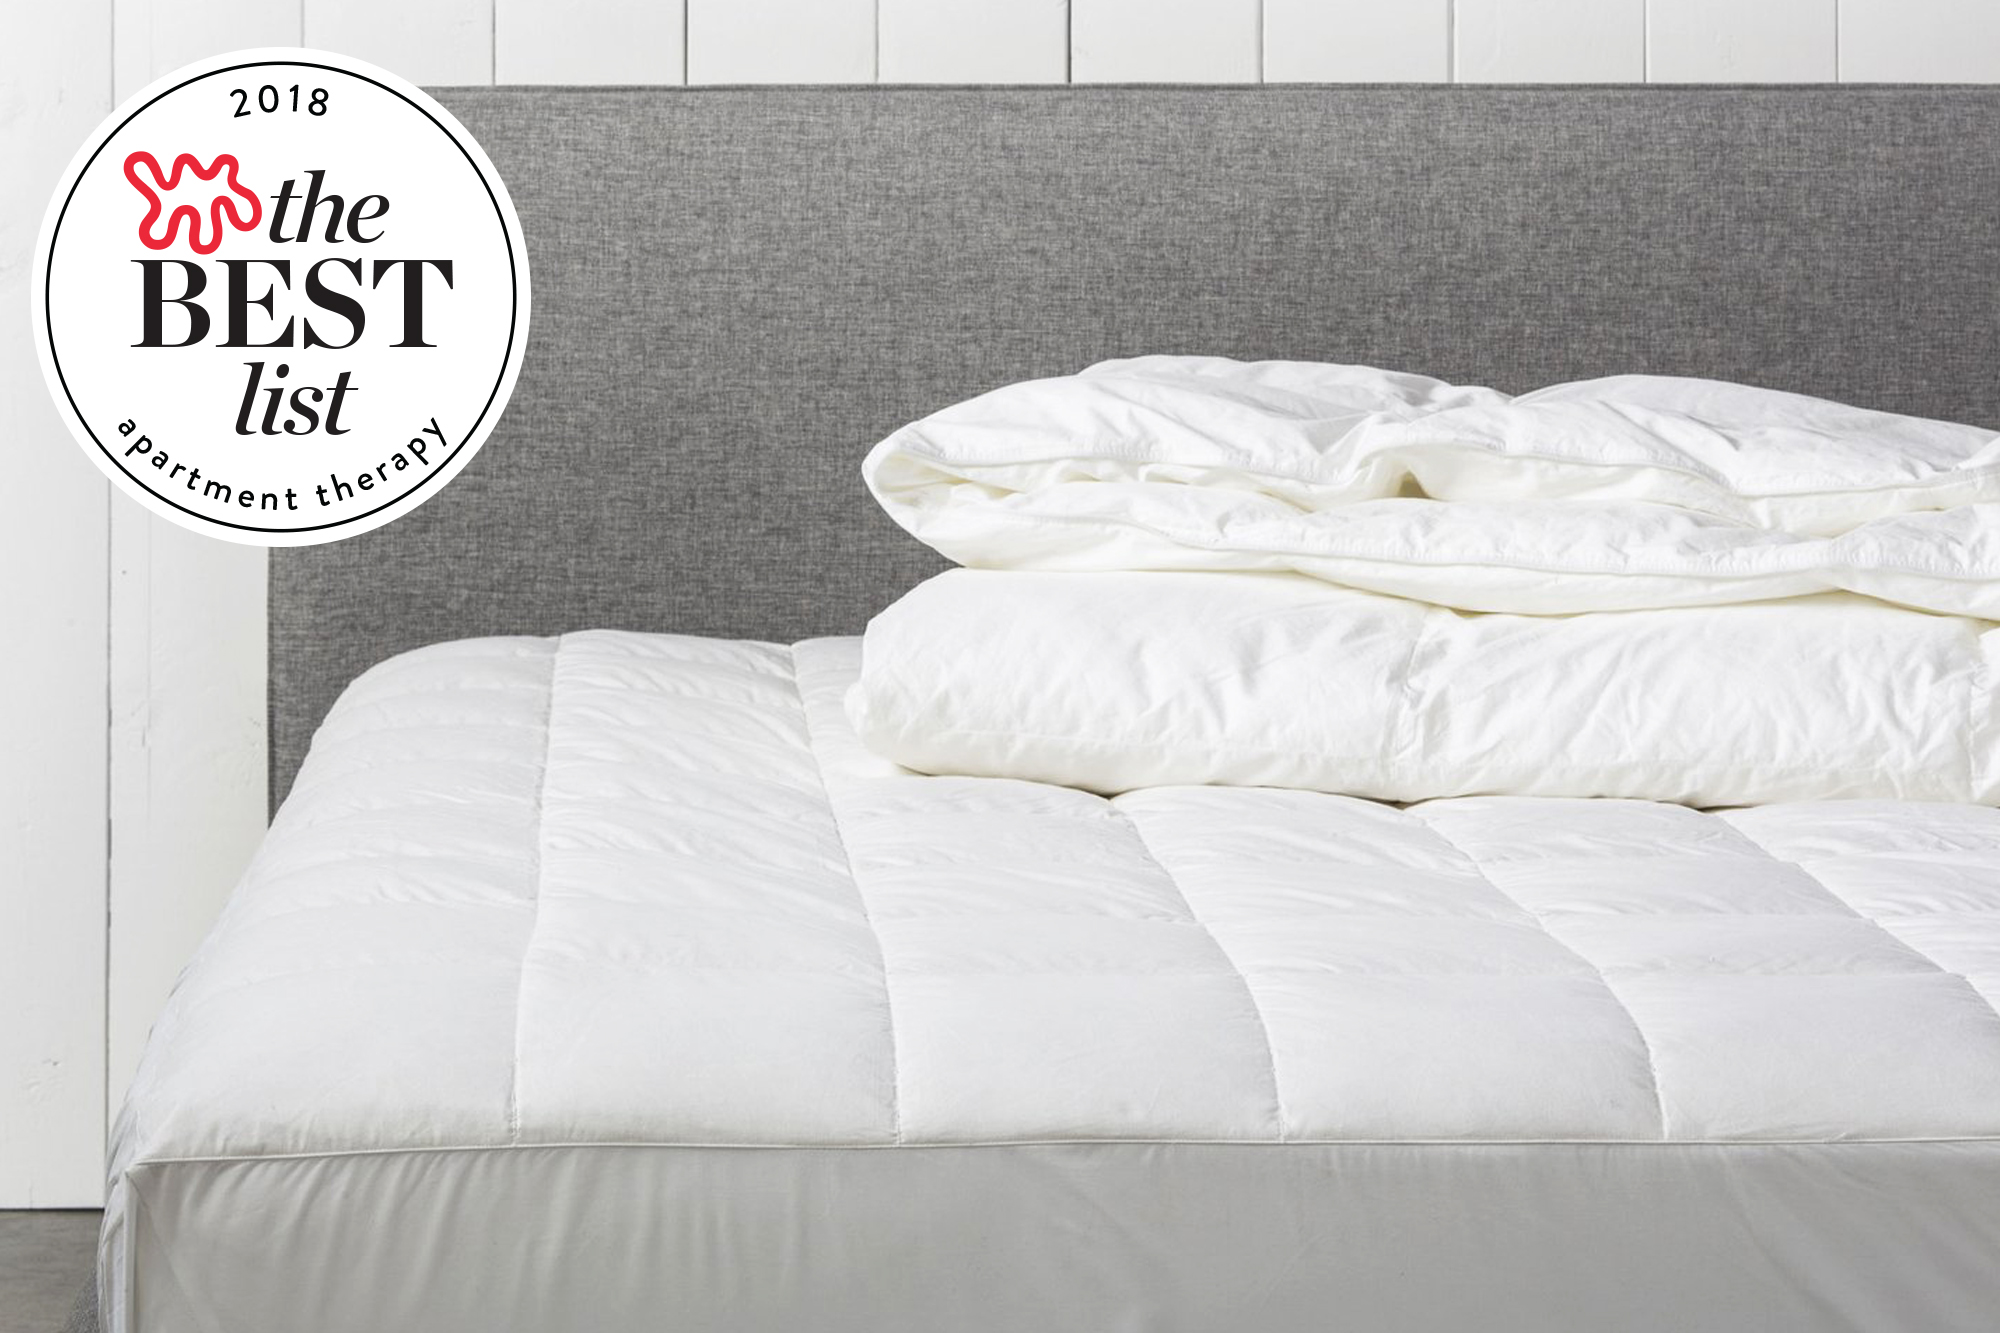 best guest mattress uk